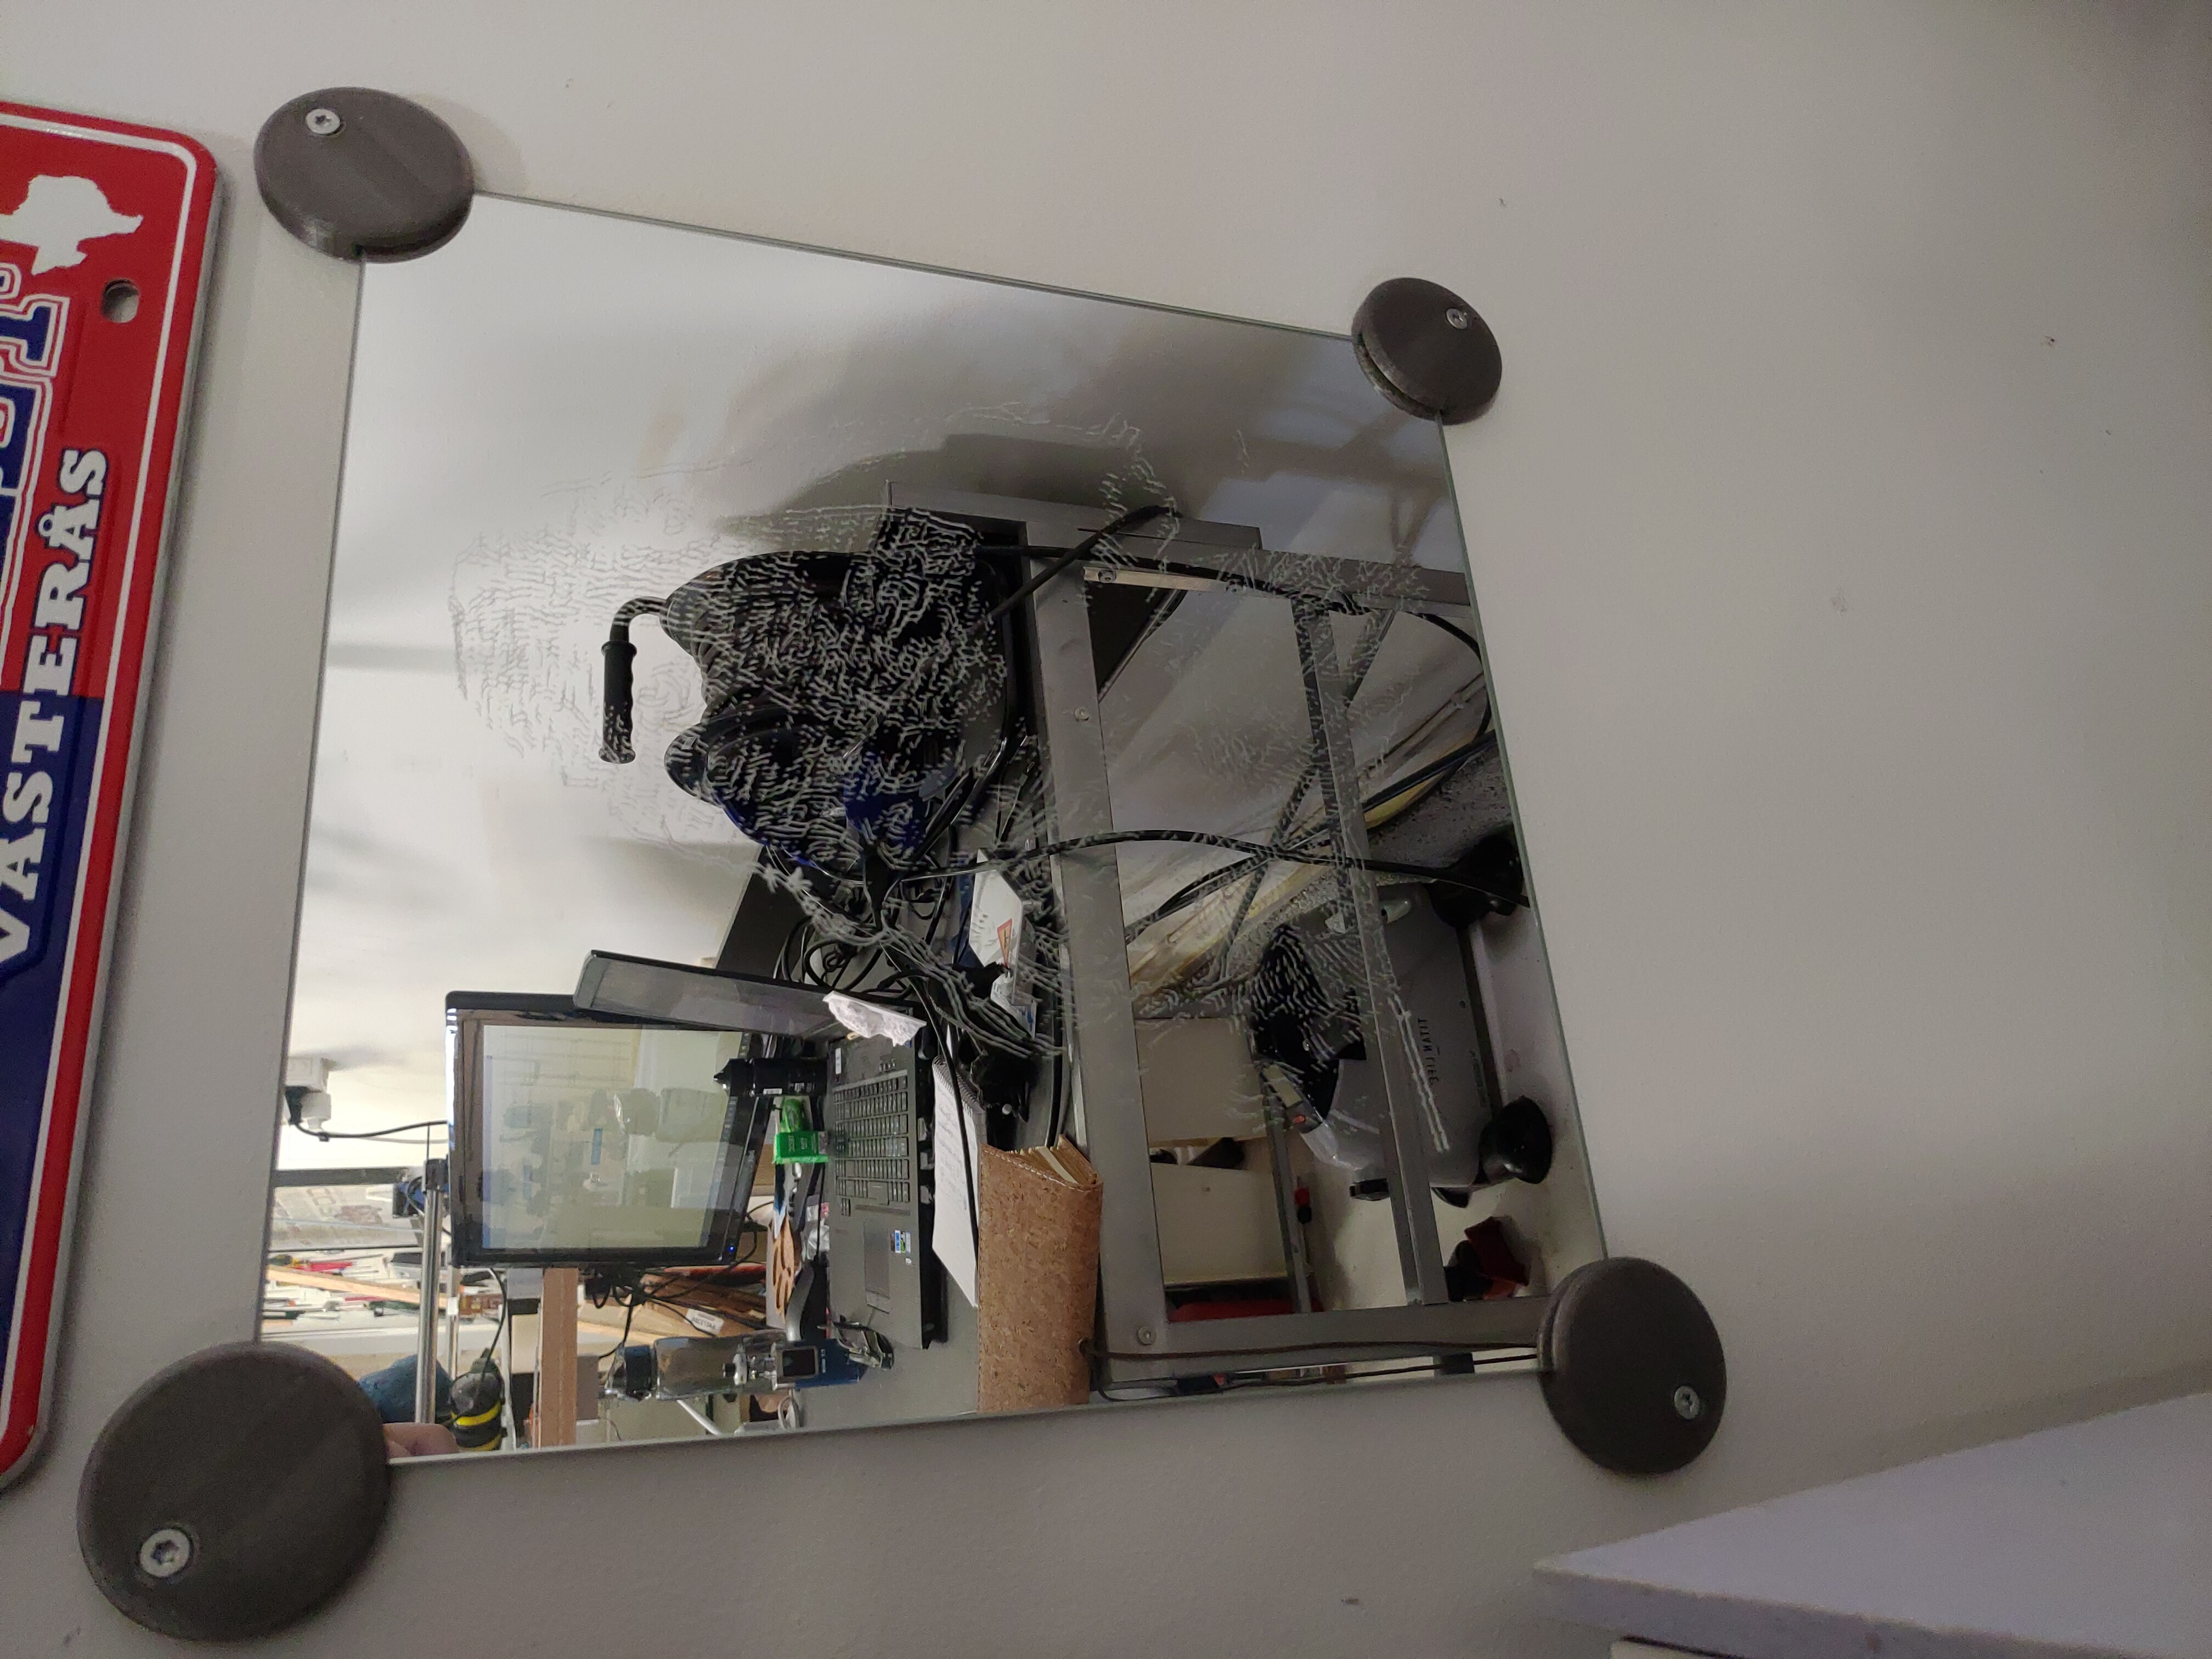 IKEA mirror holder